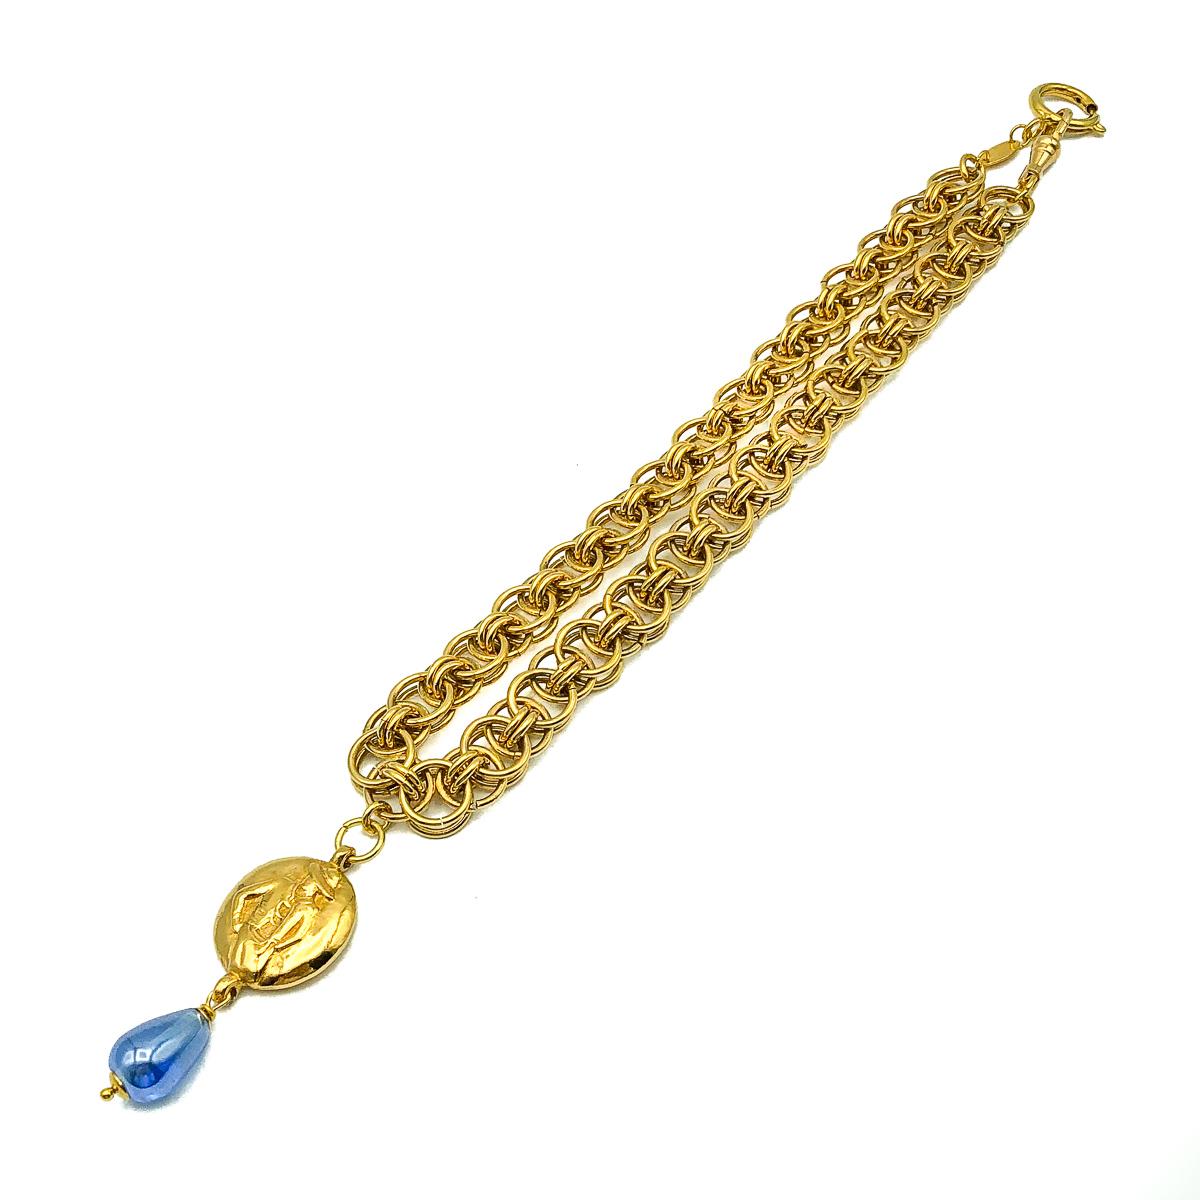 Un magnifique collier Coco vintage de Chanel. Réalisé en métal doré et en verre. Il s'agit d'une chaîne à anneau double avec un pendentif représentant Coco Chanel d'un côté et le nom CHANEL de l'autre. Fini avec une larme en verre bleu. En très bon